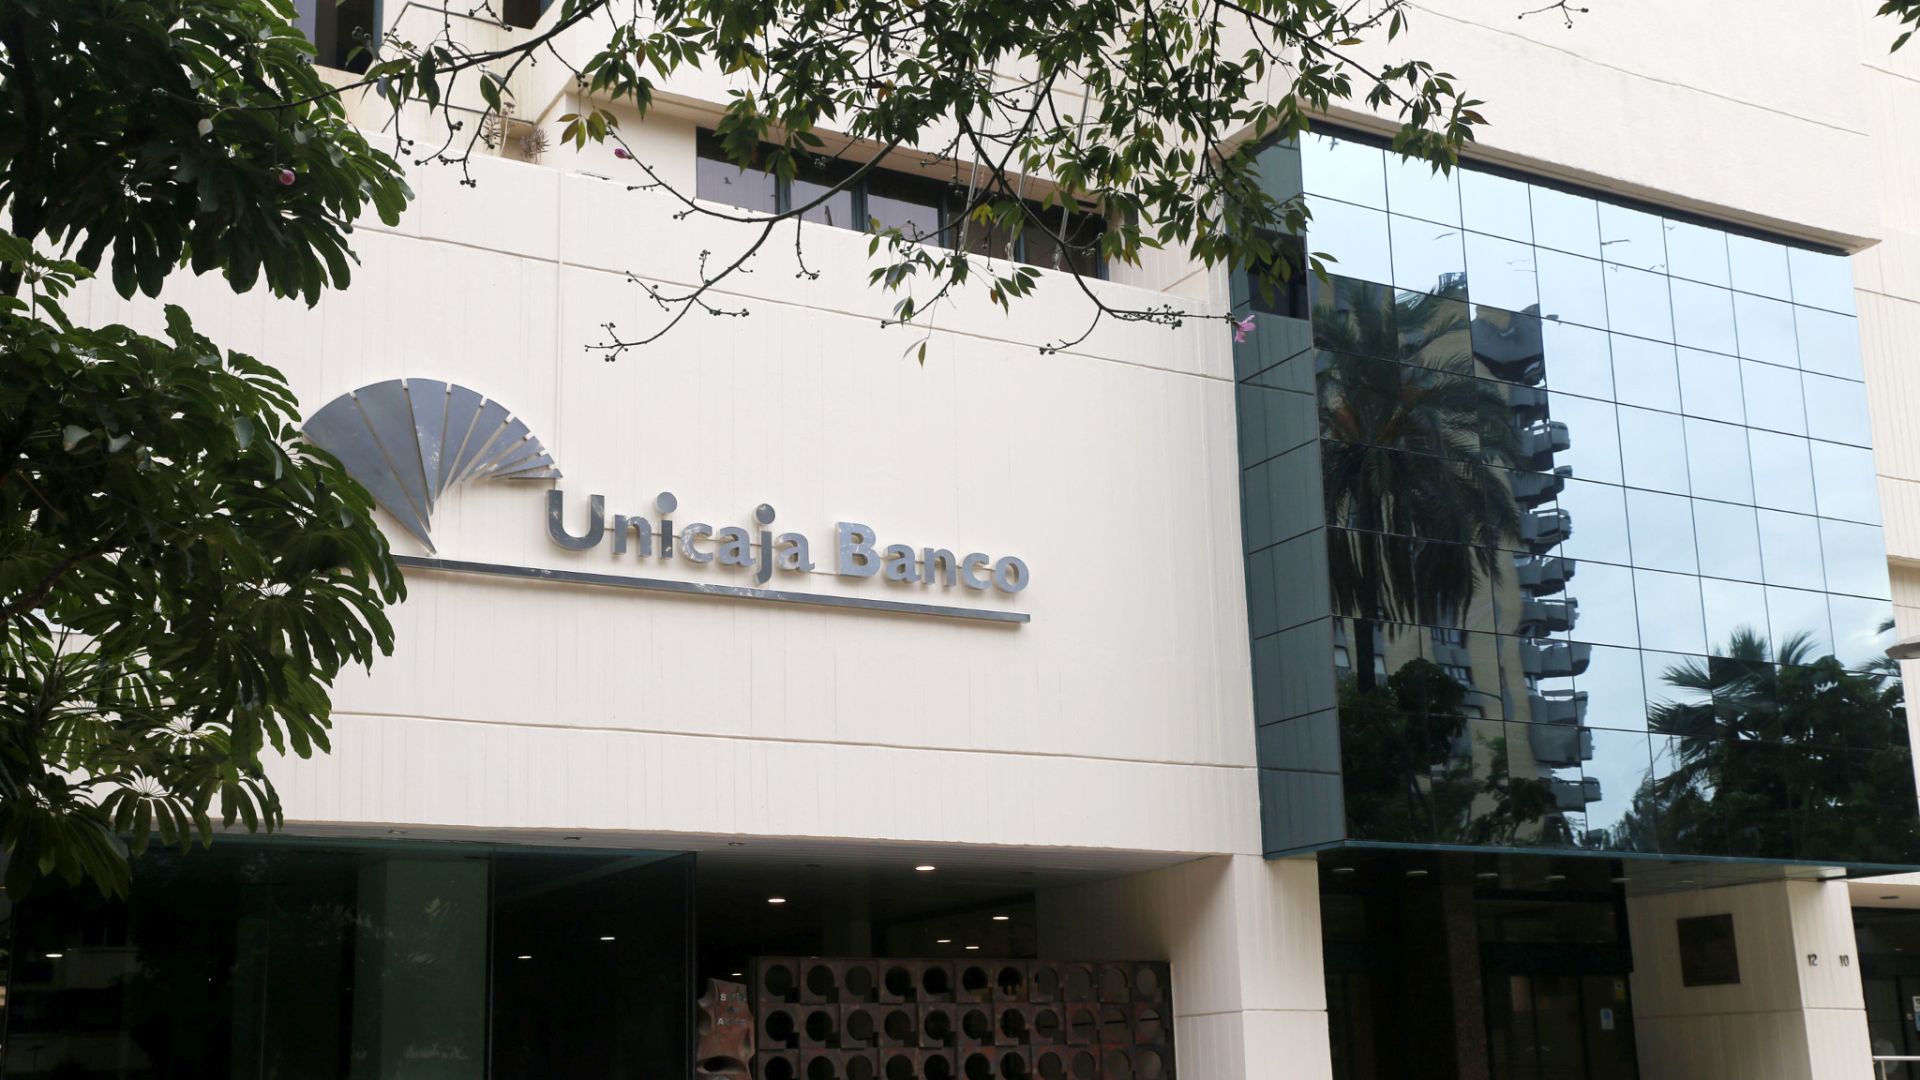 Unicaja Banco confía su transformación digital a Kyndryl.